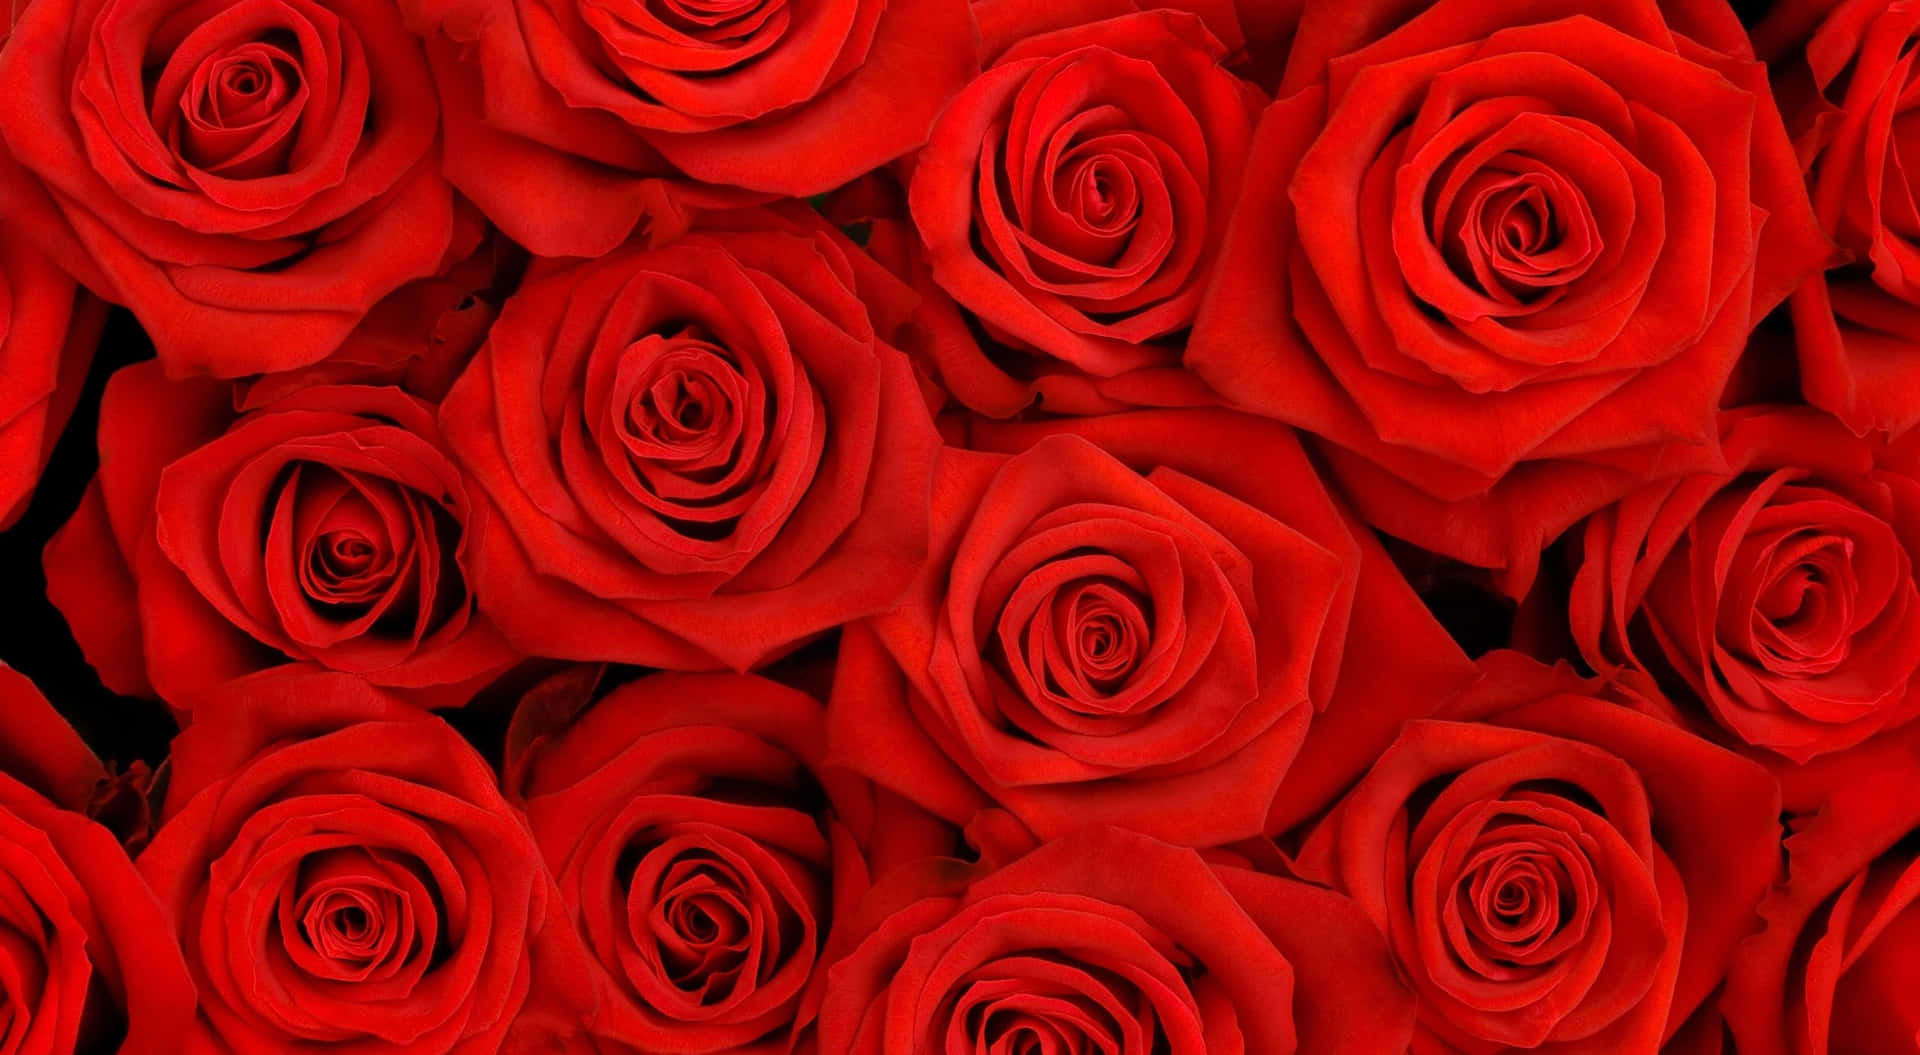 Fundode Tela De Rosas Vermelhas Brilhantes Em Top View Em Resolução 1440p.